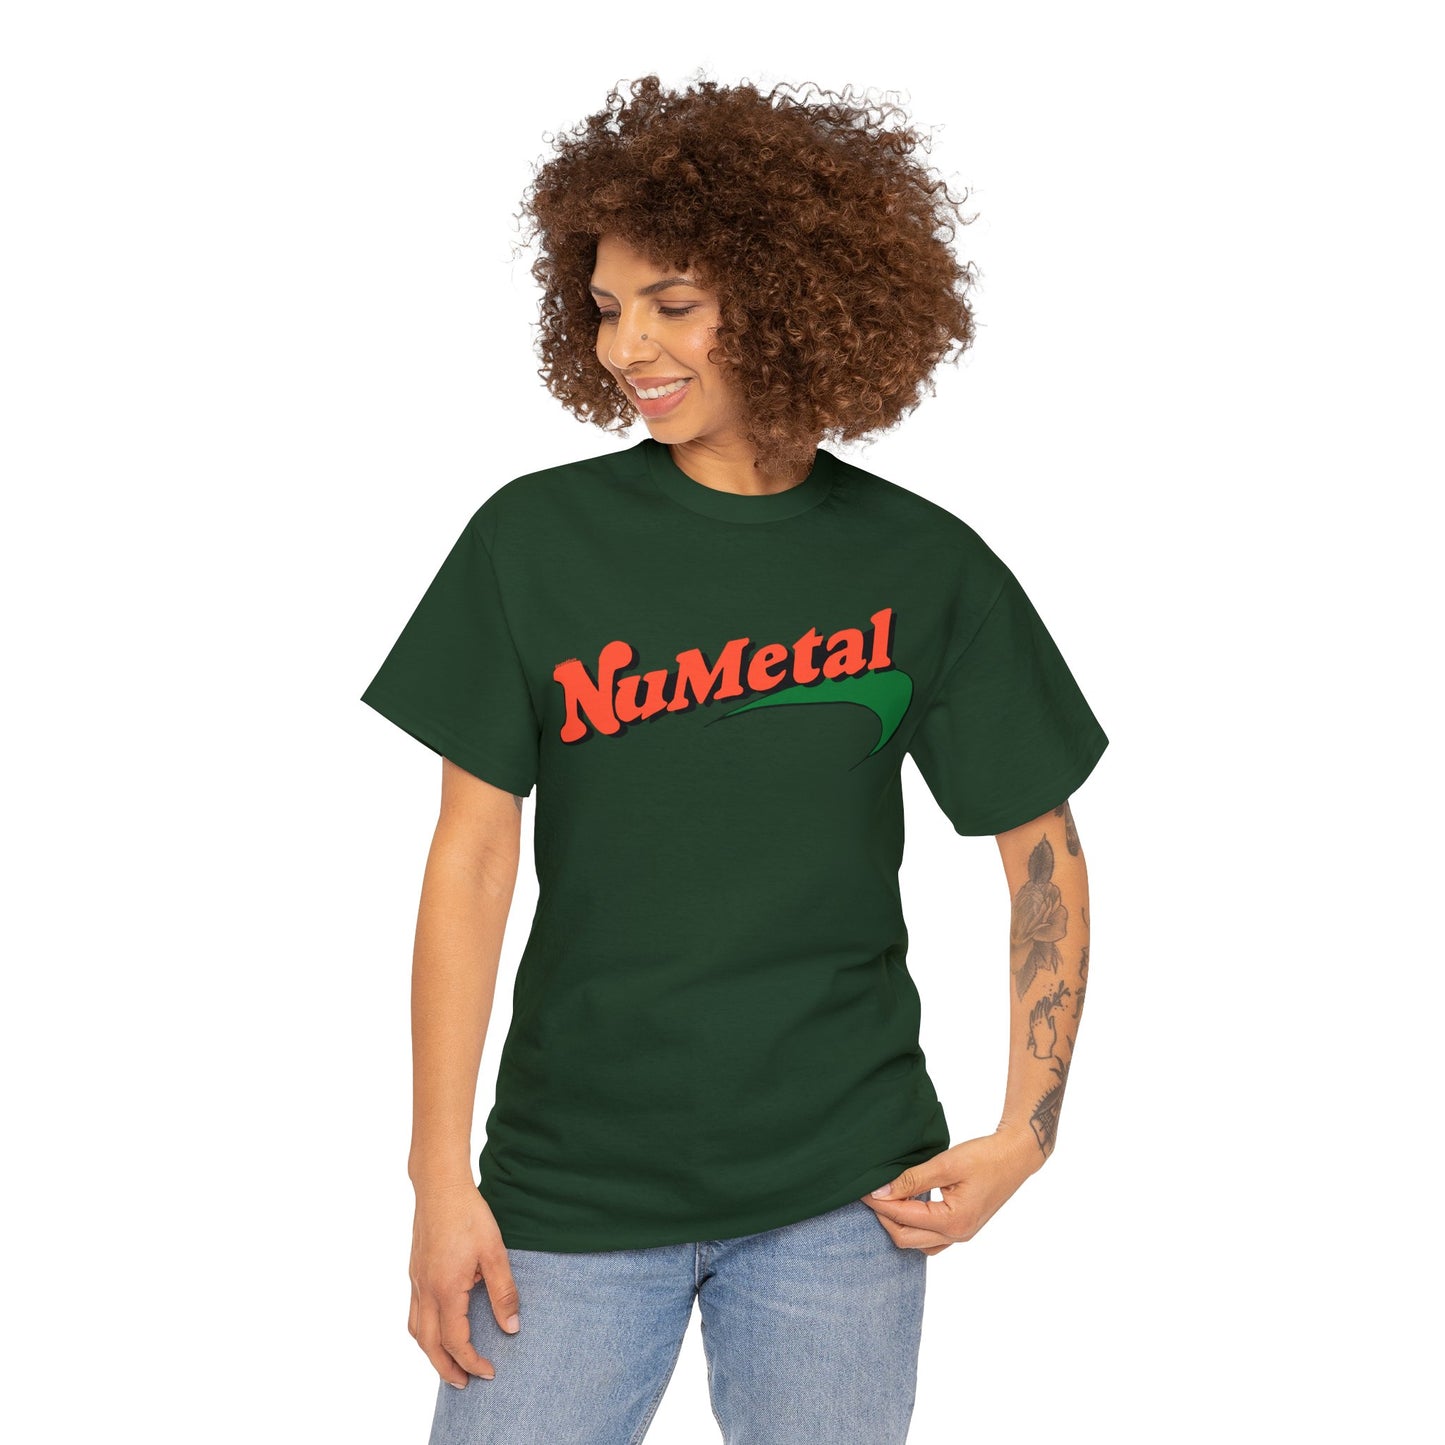 Numetal "Newport" T-shirt